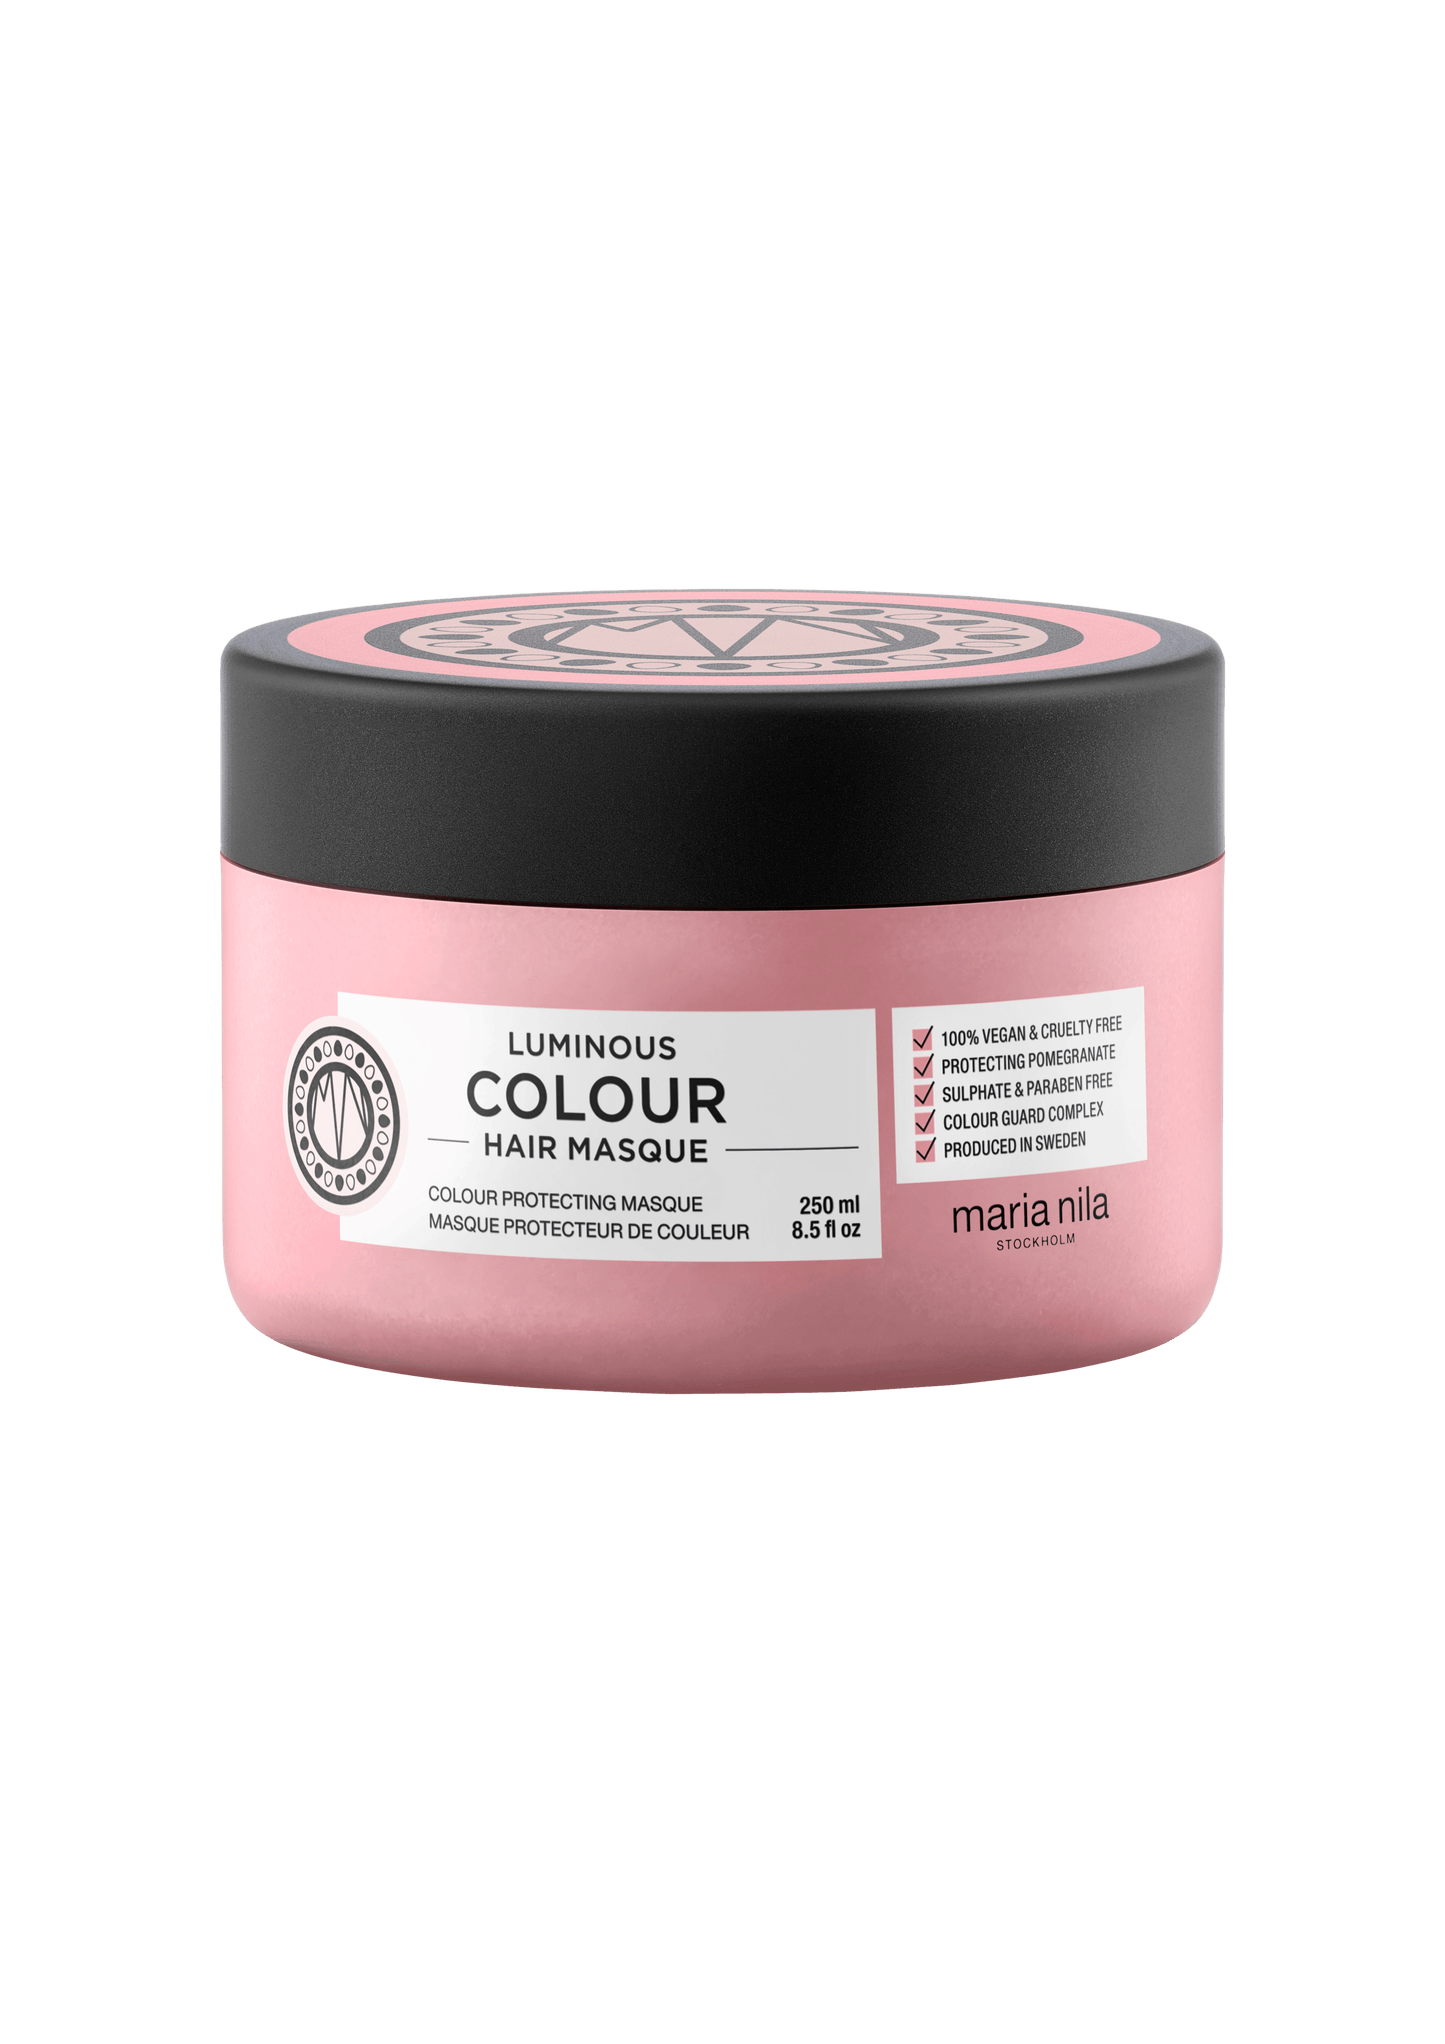 Luminous Colour Masque - The Coloroom 